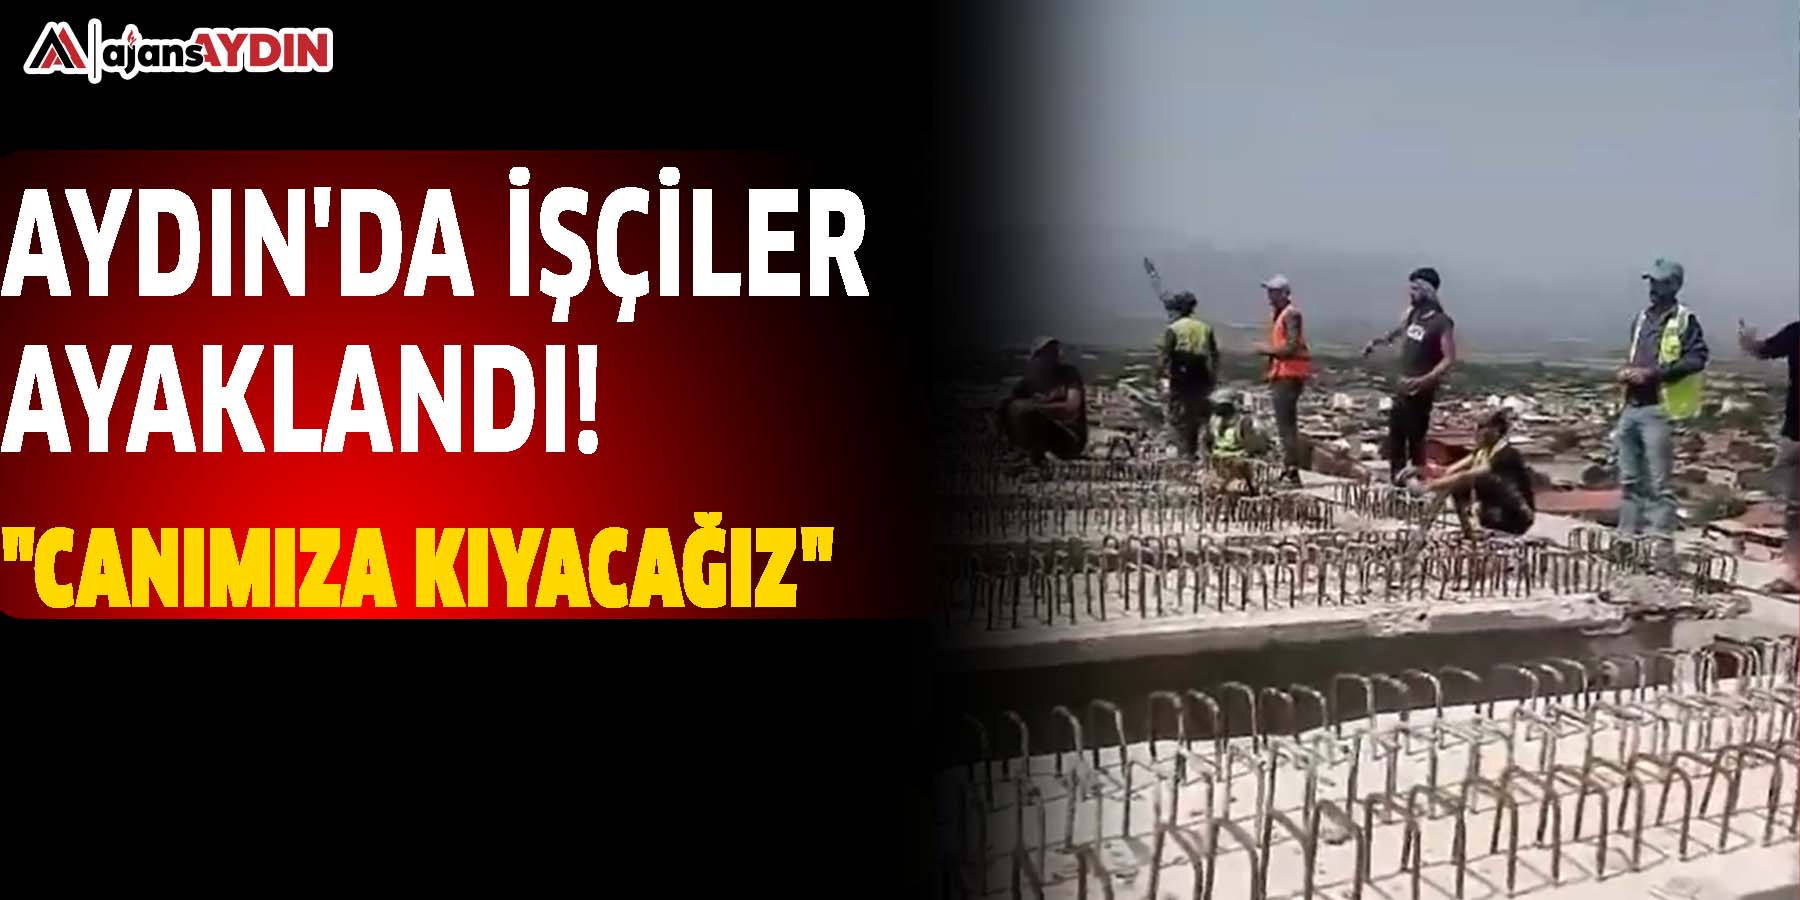 Aydın'da işçiler ayaklandı! "Canımıza kıyacağız"